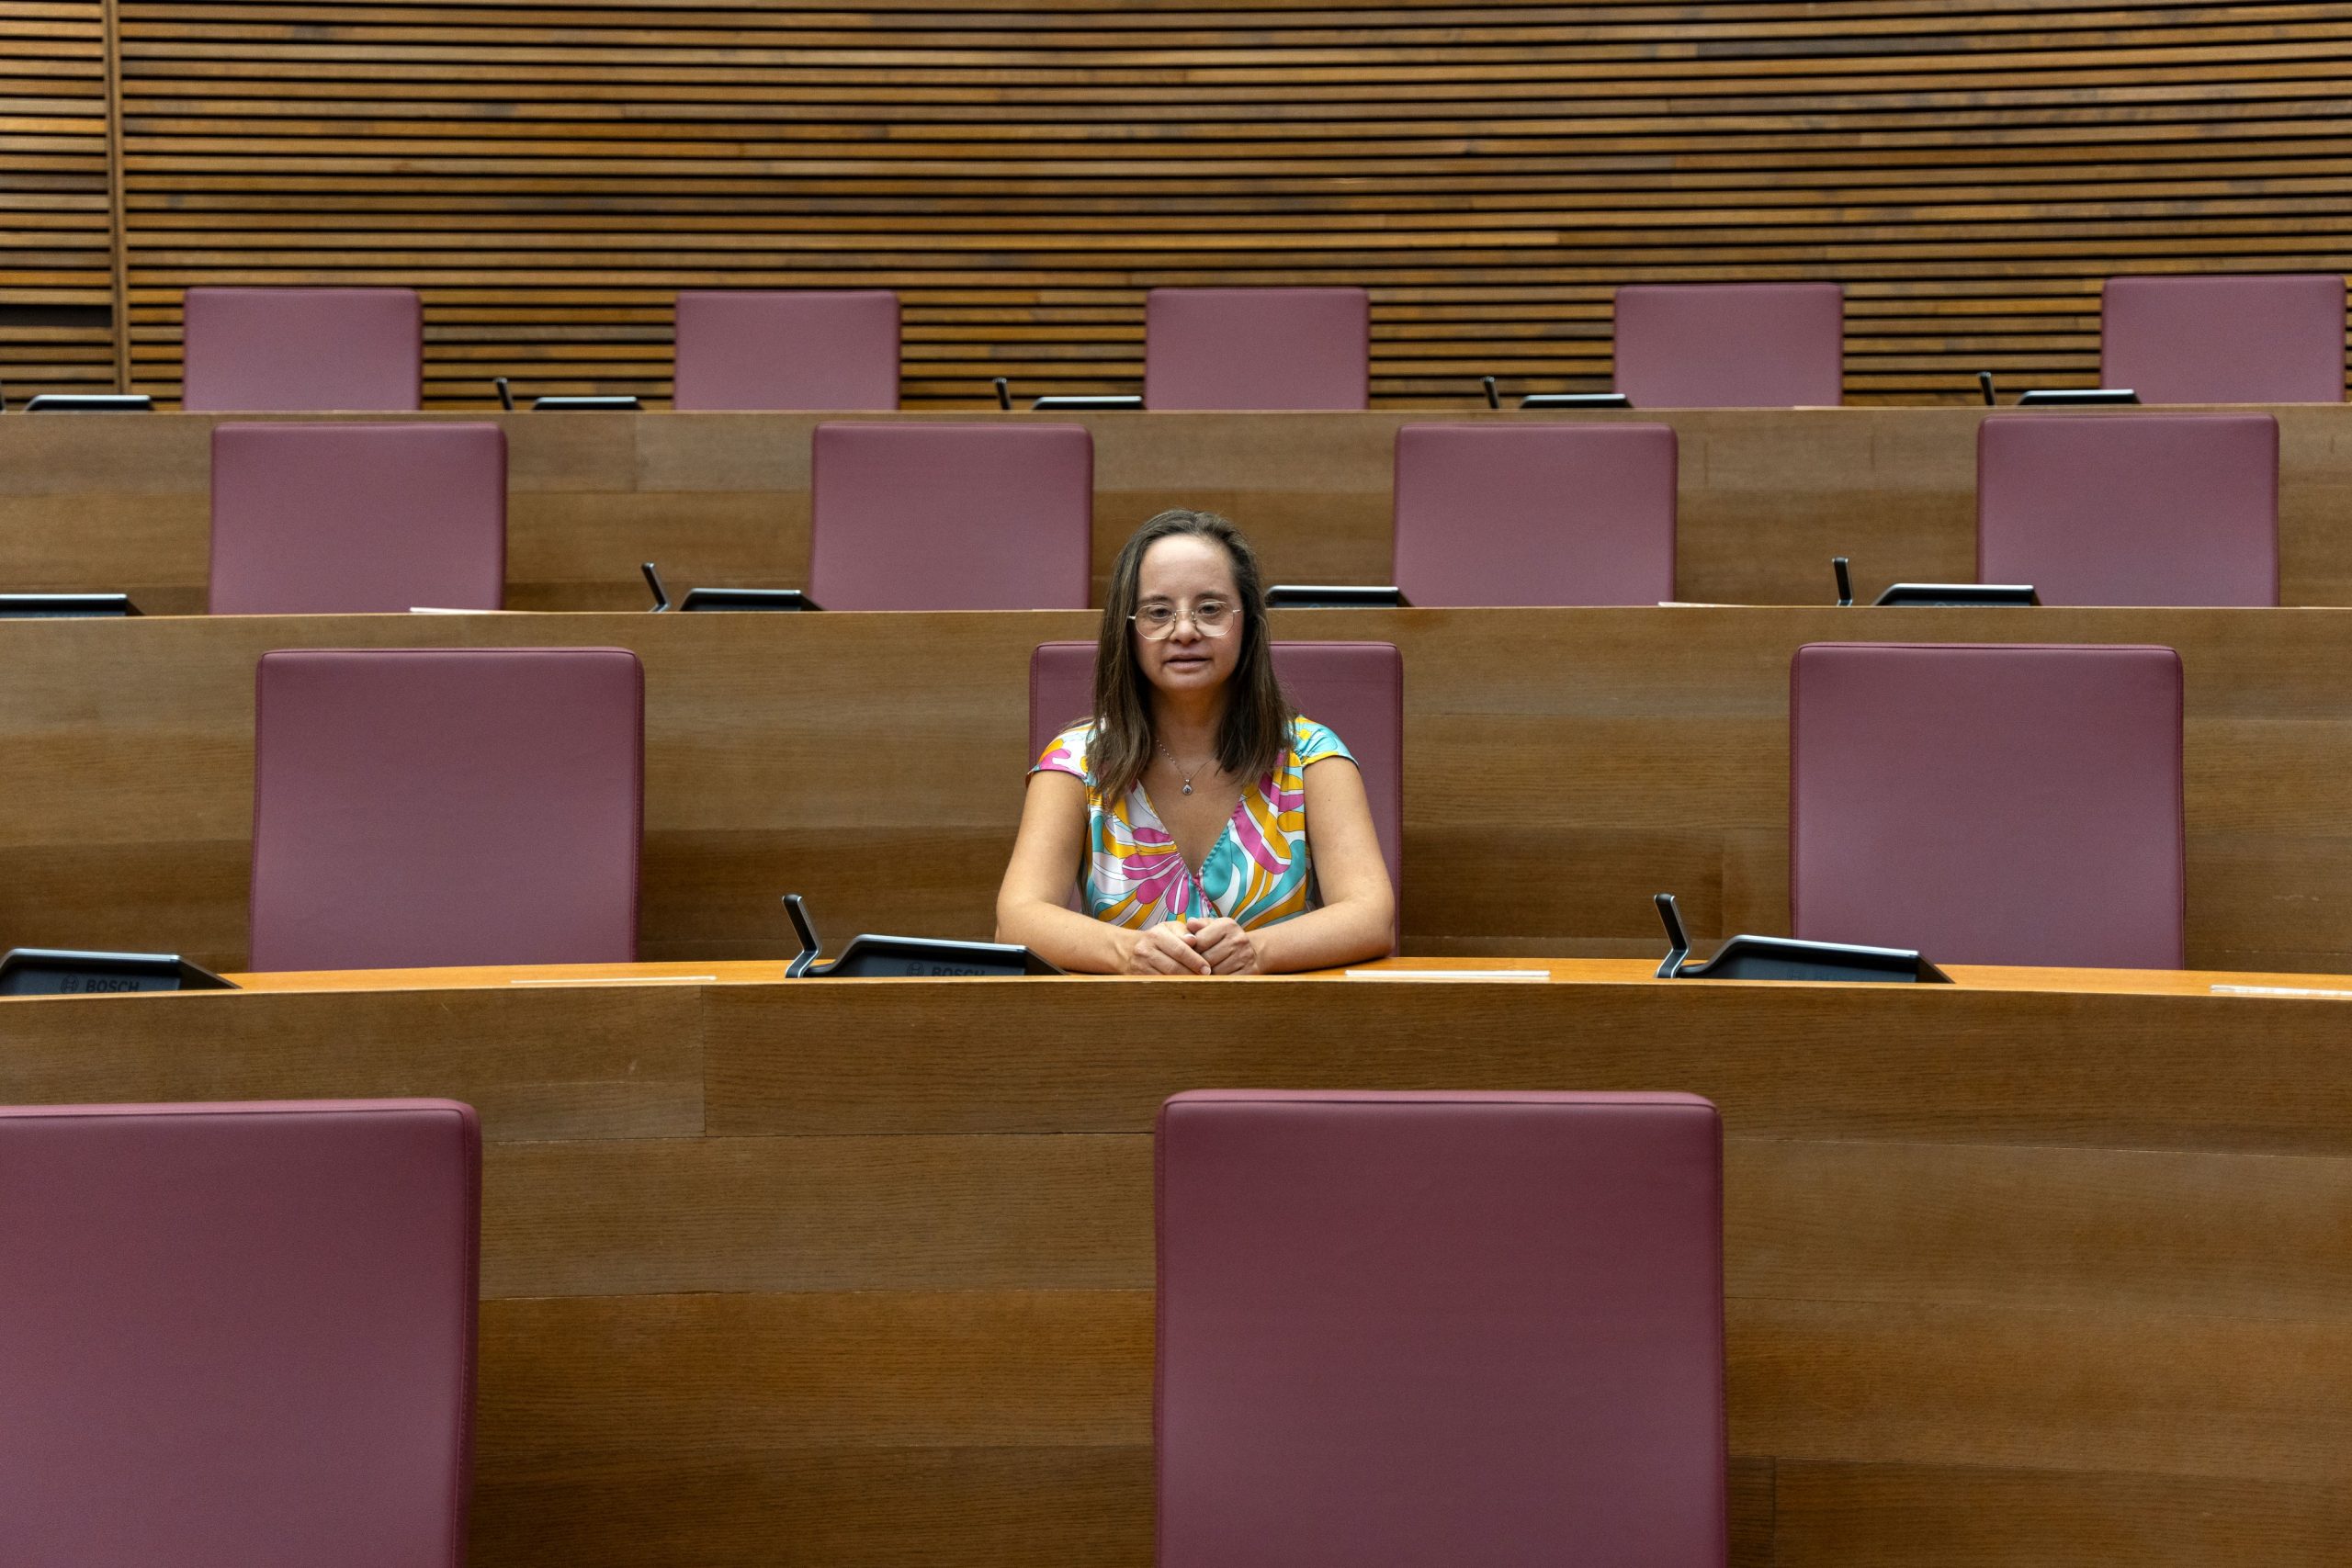 Megválasztották a világ első Down-szindrómával élő parlamenti képviselőjét